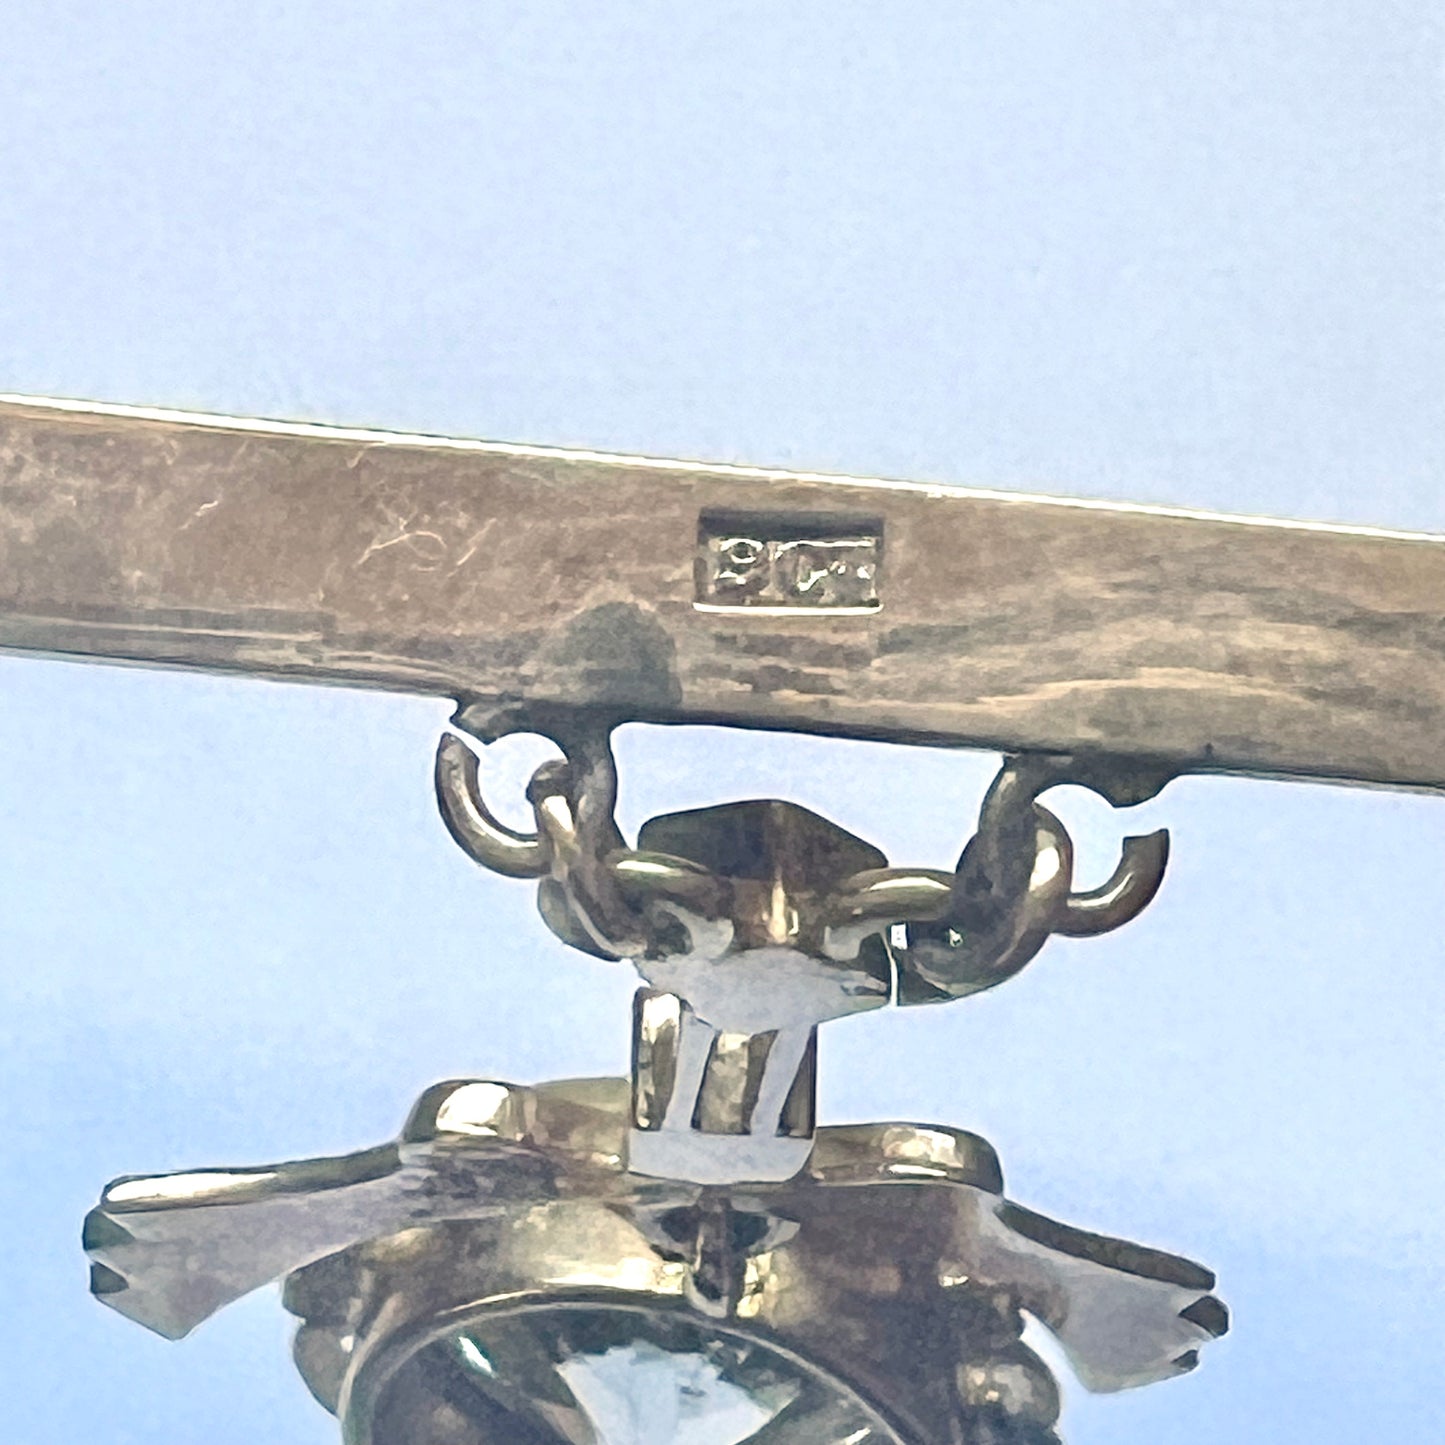 9ct 黄金条形胸针，带花环细节和闪亮的钻石膏状吊坠。约 1940 年代至 60 年代